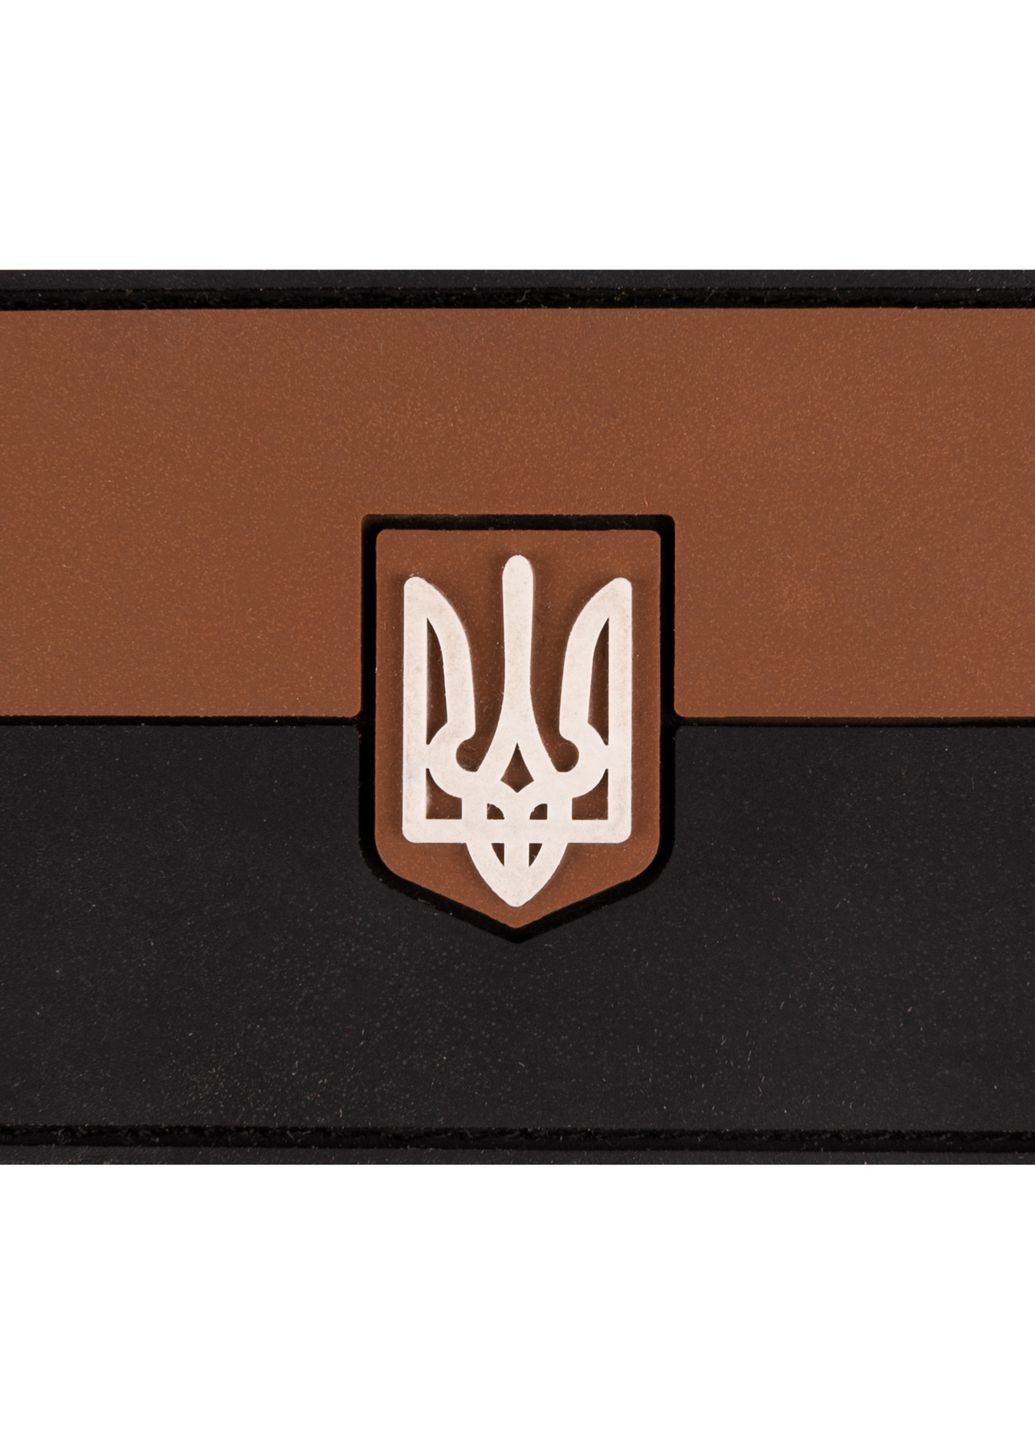 ПВХ патч "Прапор" коричневий - Brand Element (278040120)